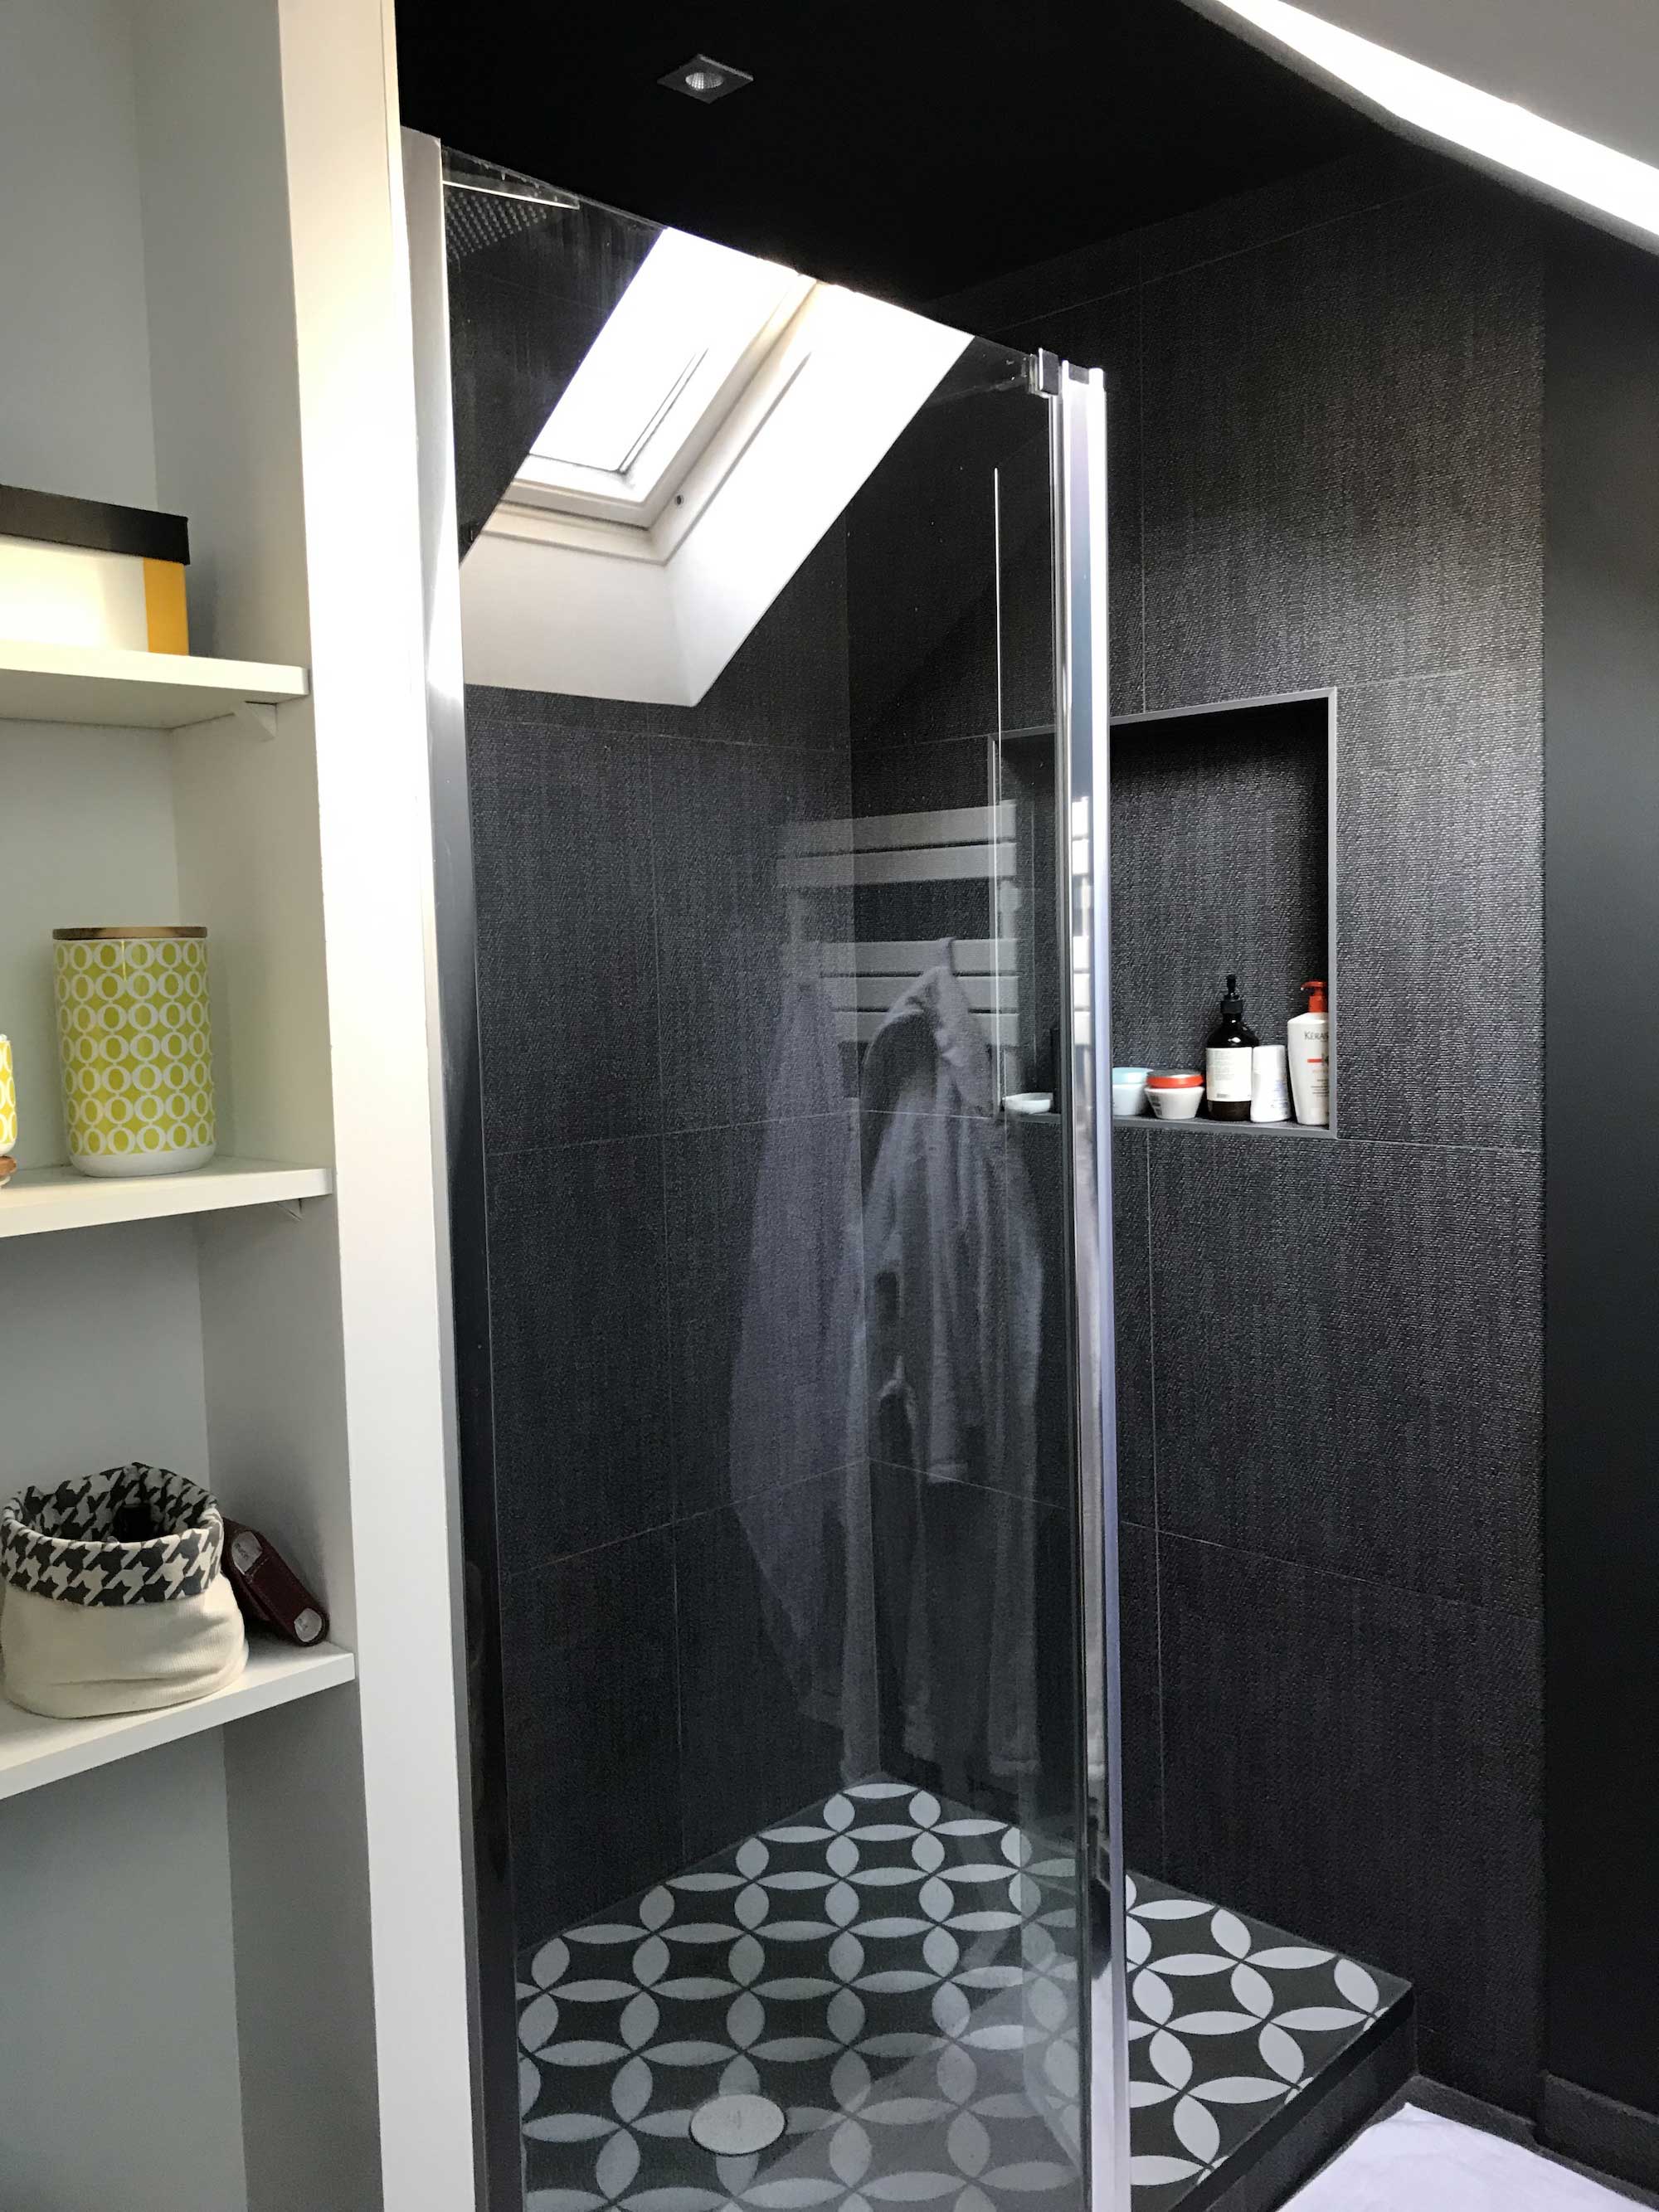 Comment combiner douche et baignoire dans la même salle de bain - Nantes 44  - La Maison Des Travaux